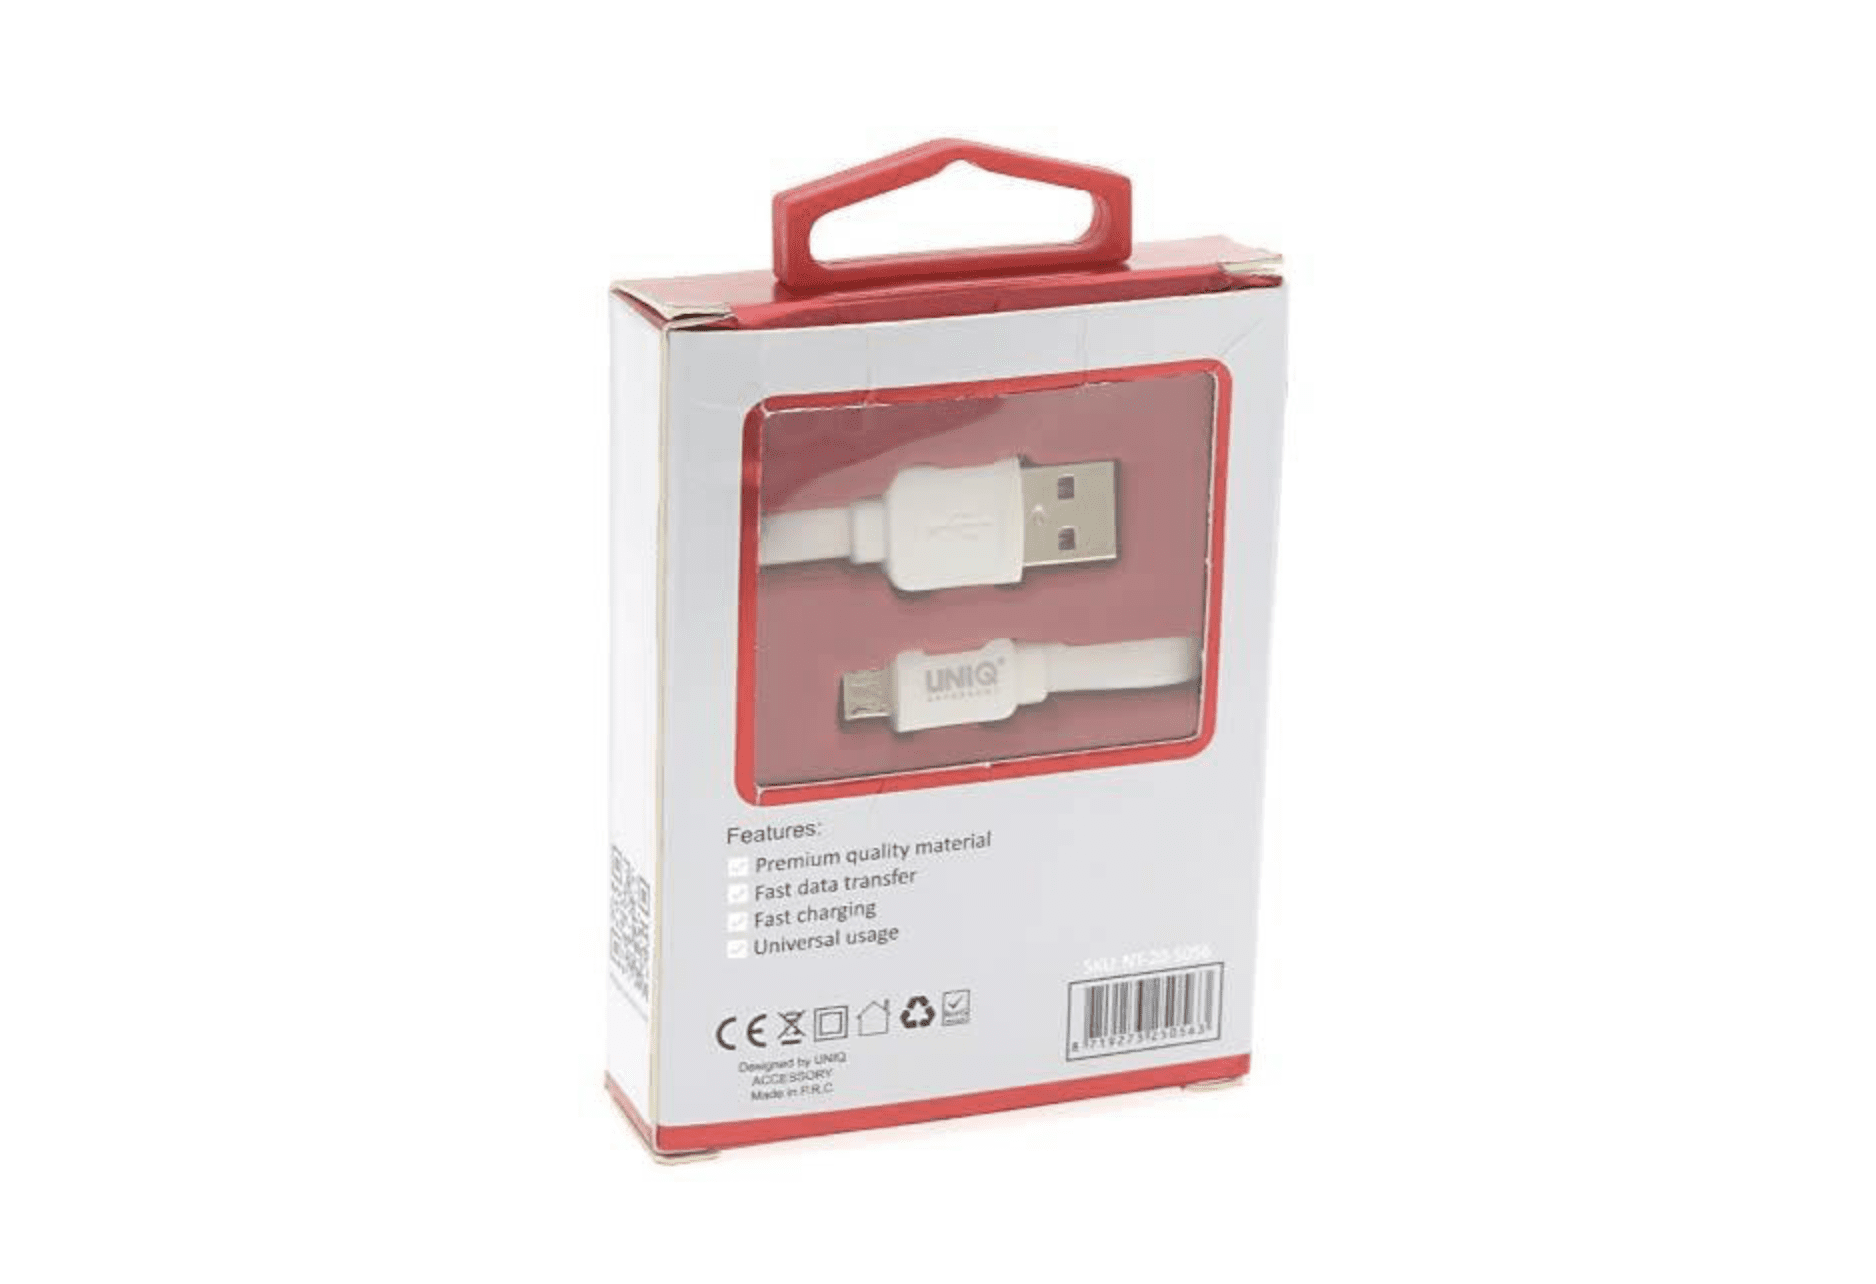 Câble Micro USB - 1 Mètre Blanc - Chargement rapide/transfert de données 2.1A - Accessoire Uniq.